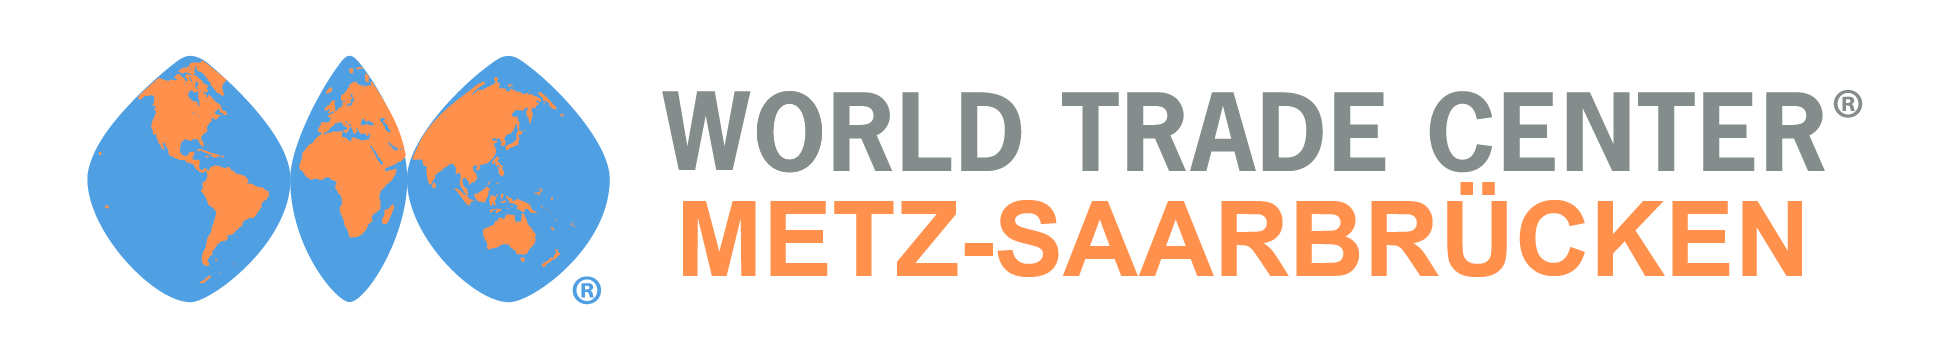 Logo du World trade center Metz-Saarbrücken